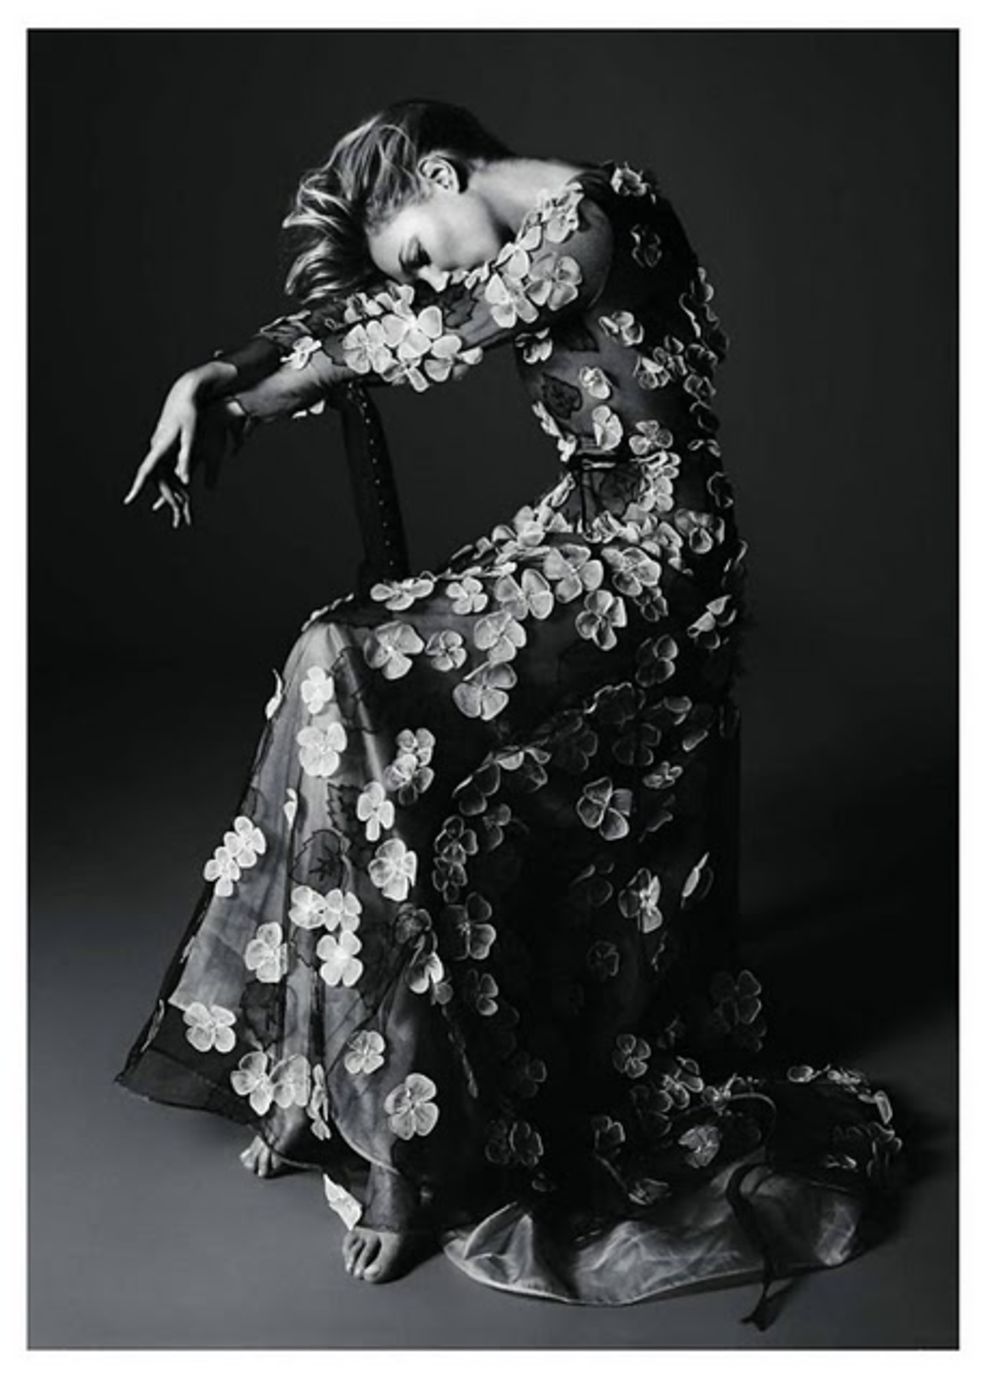 Na naslovnici najnovijeg, majskog izdanja francuskog magazina Vogue osvanula je supermodel Kejt Mos. S obzirom da nam se lagano približava leto, modni urednici ovog časopisa odabrali su za tridesetsedmogodišnju lepoticu začuđujuće mnogo garderobe koja srećom n